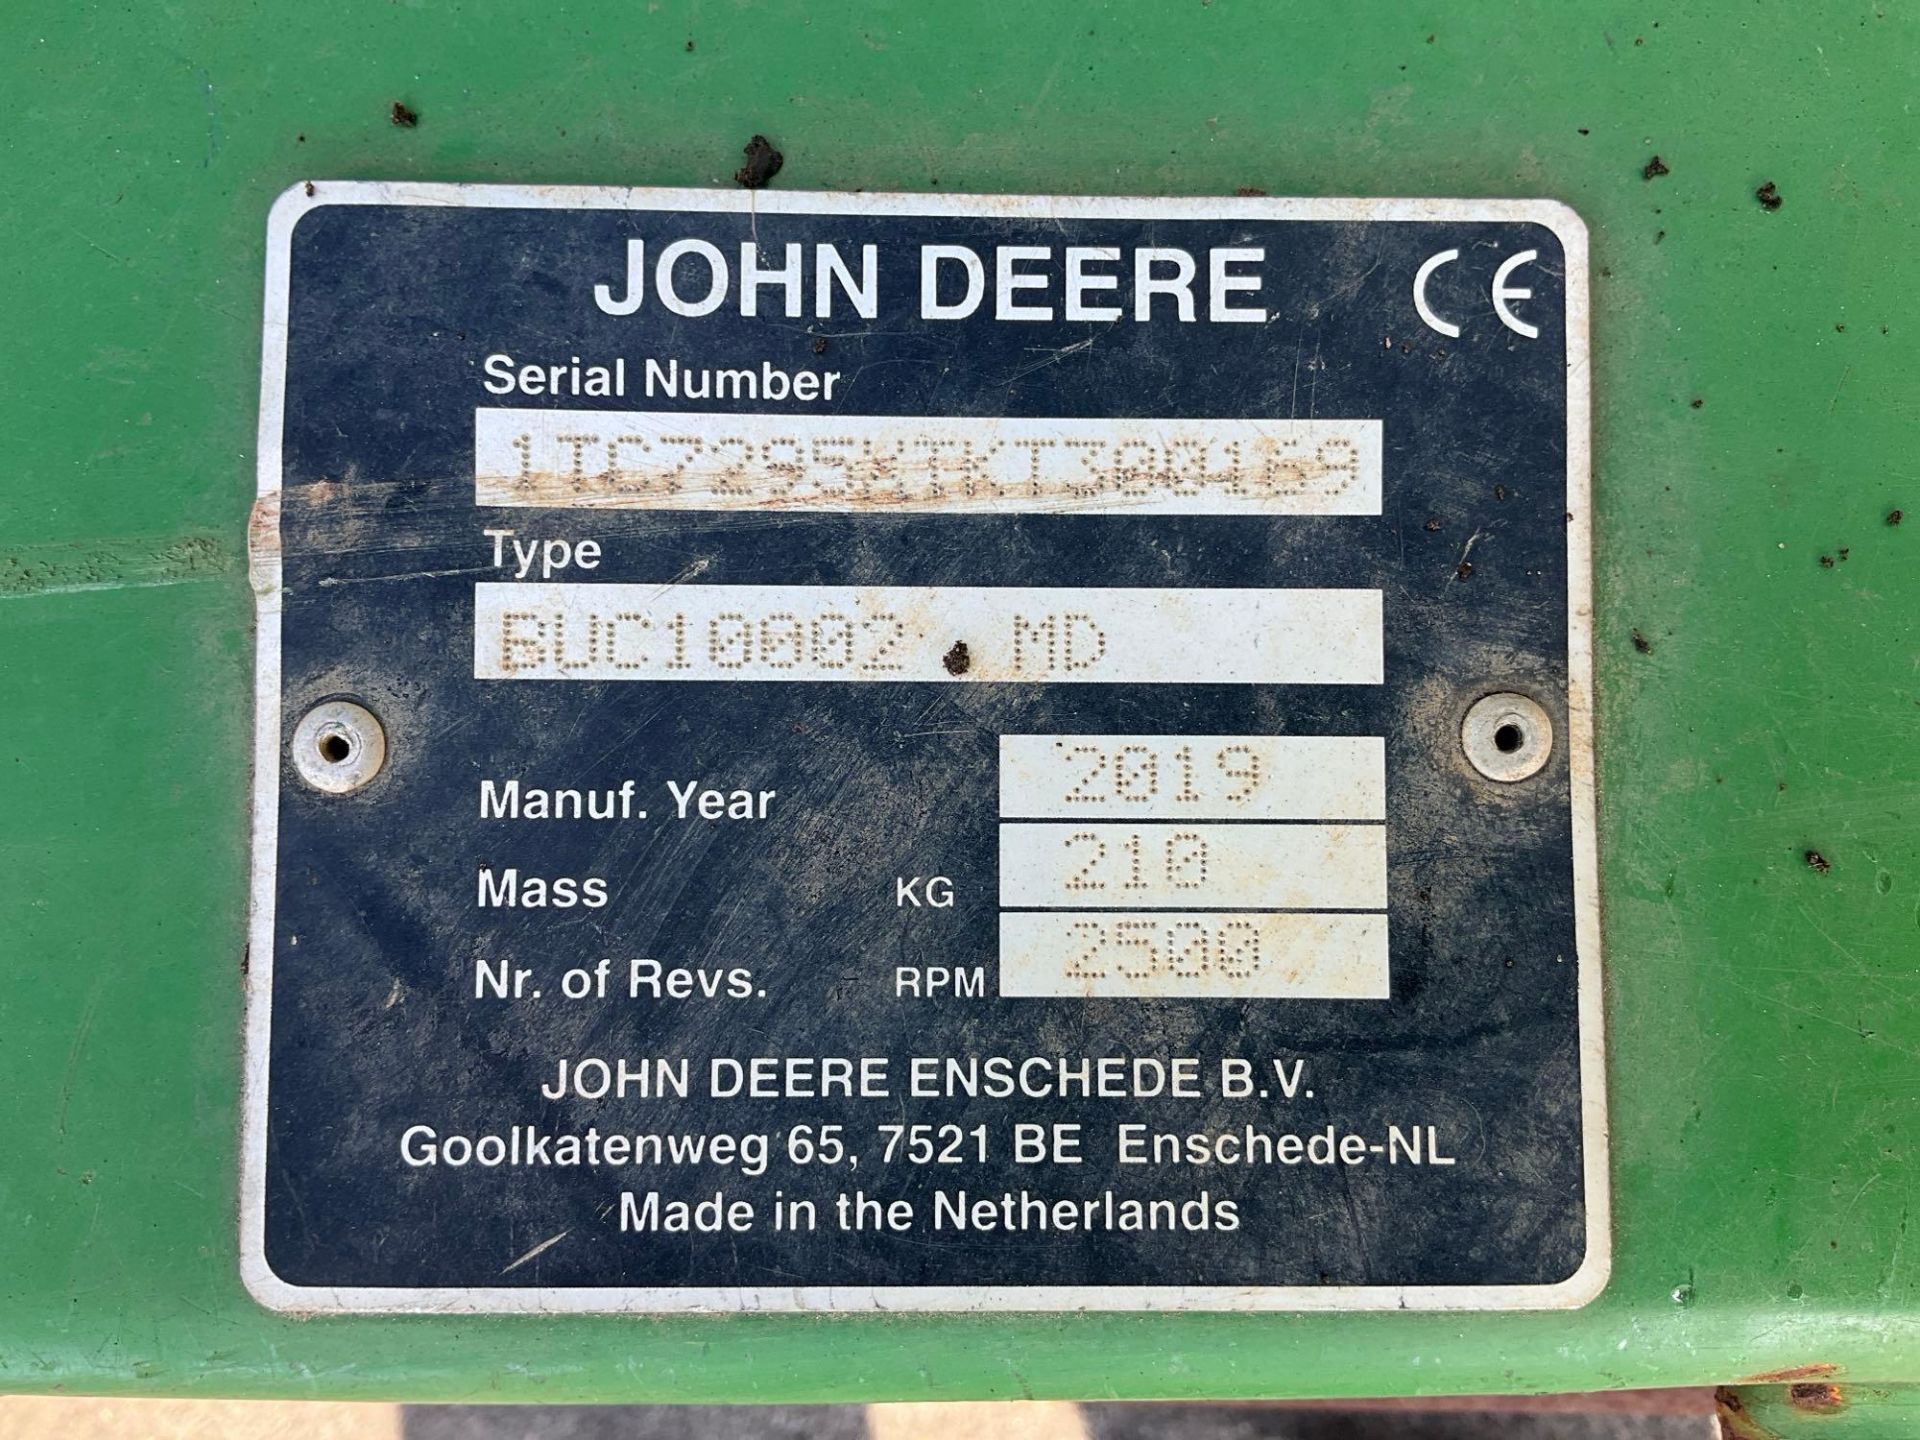 JOHN DEERE 1575 TERRAINCUT...MOWER, DIESEL, ENCLOSED CAB, 4WD, JOHN DEERE BUC10002 MD FASTBACK CO... - Image 12 of 18